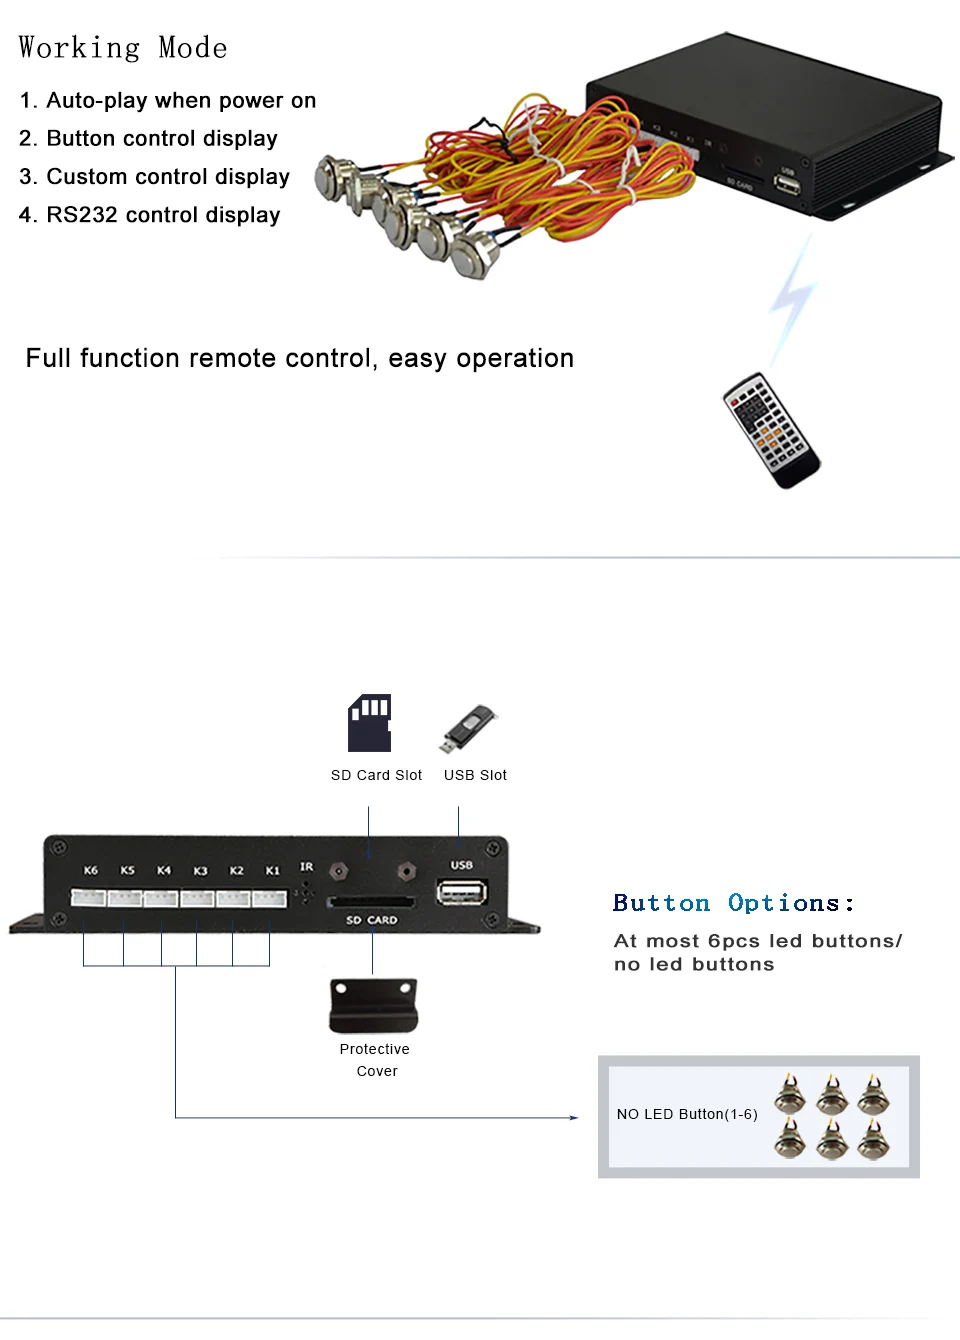 MPC1005-6 розничный магазин кнопочный оптический и HD выход RS232 управление Гарантировано Реклама медиаплеер